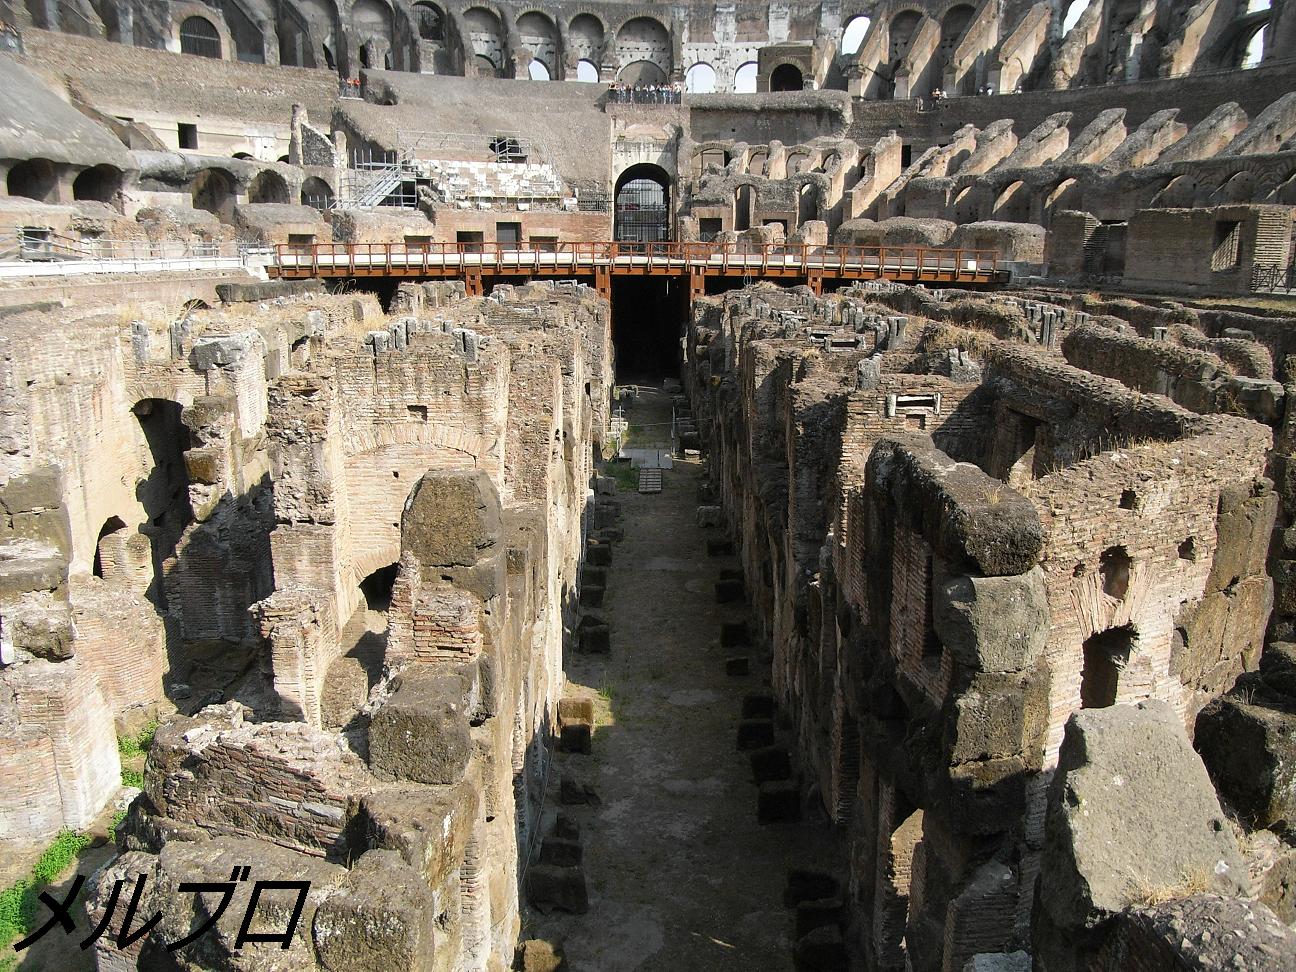 イタリア ローマ旅行記17 ローマに来たら絶対行け コロッセオがローマで一番の見所だと思います ロンリートラベル 海外個人旅行記